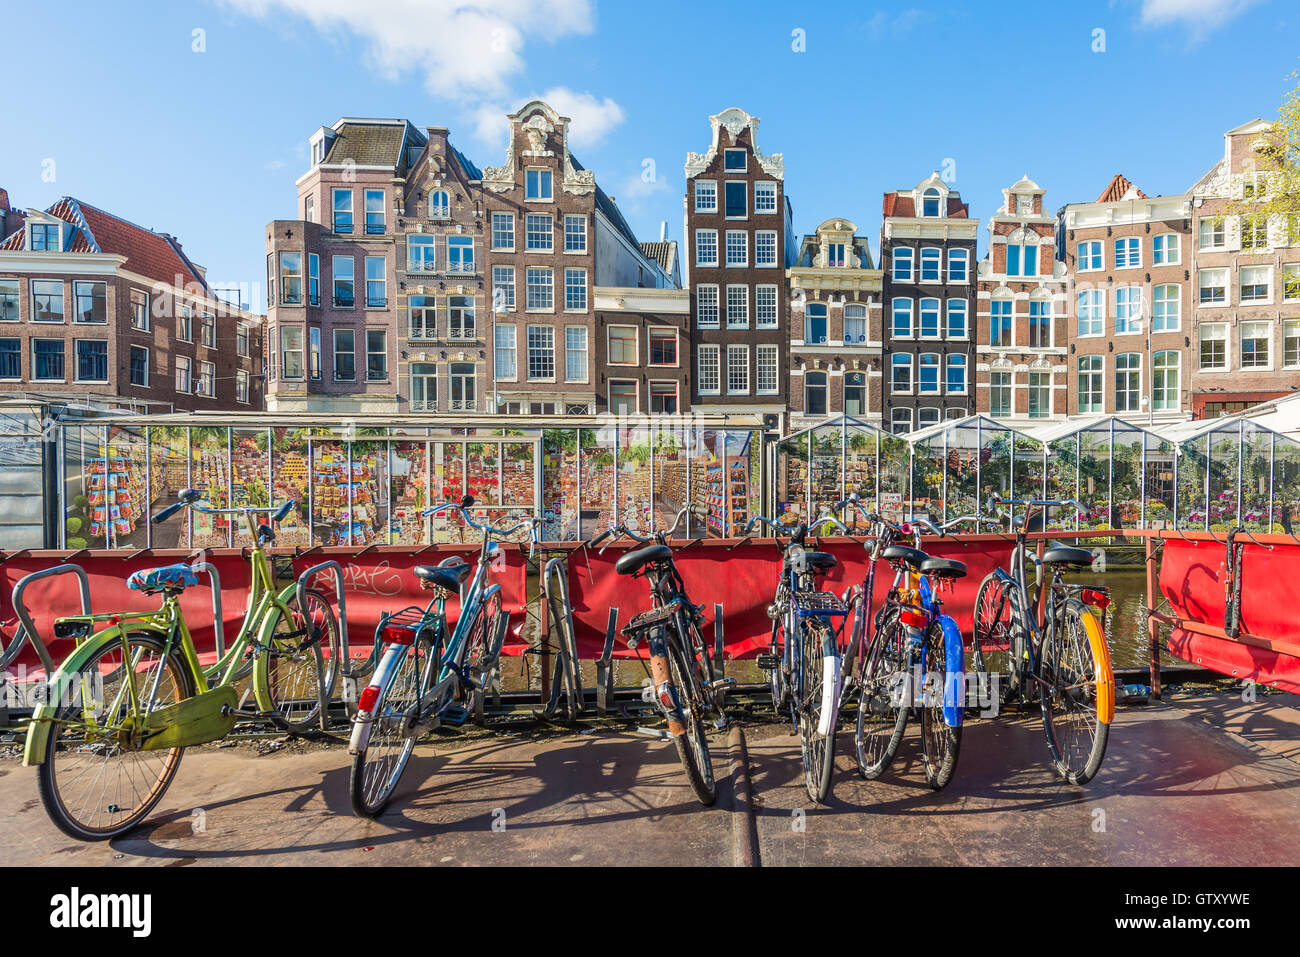 Viele Fahrrad-Parkplatz in der Nähe von Blumenmarkt in Amsterdam, Niederlande. Fahrrad ist Populat Transport in Amsterdam, Niederlande. Stockfoto